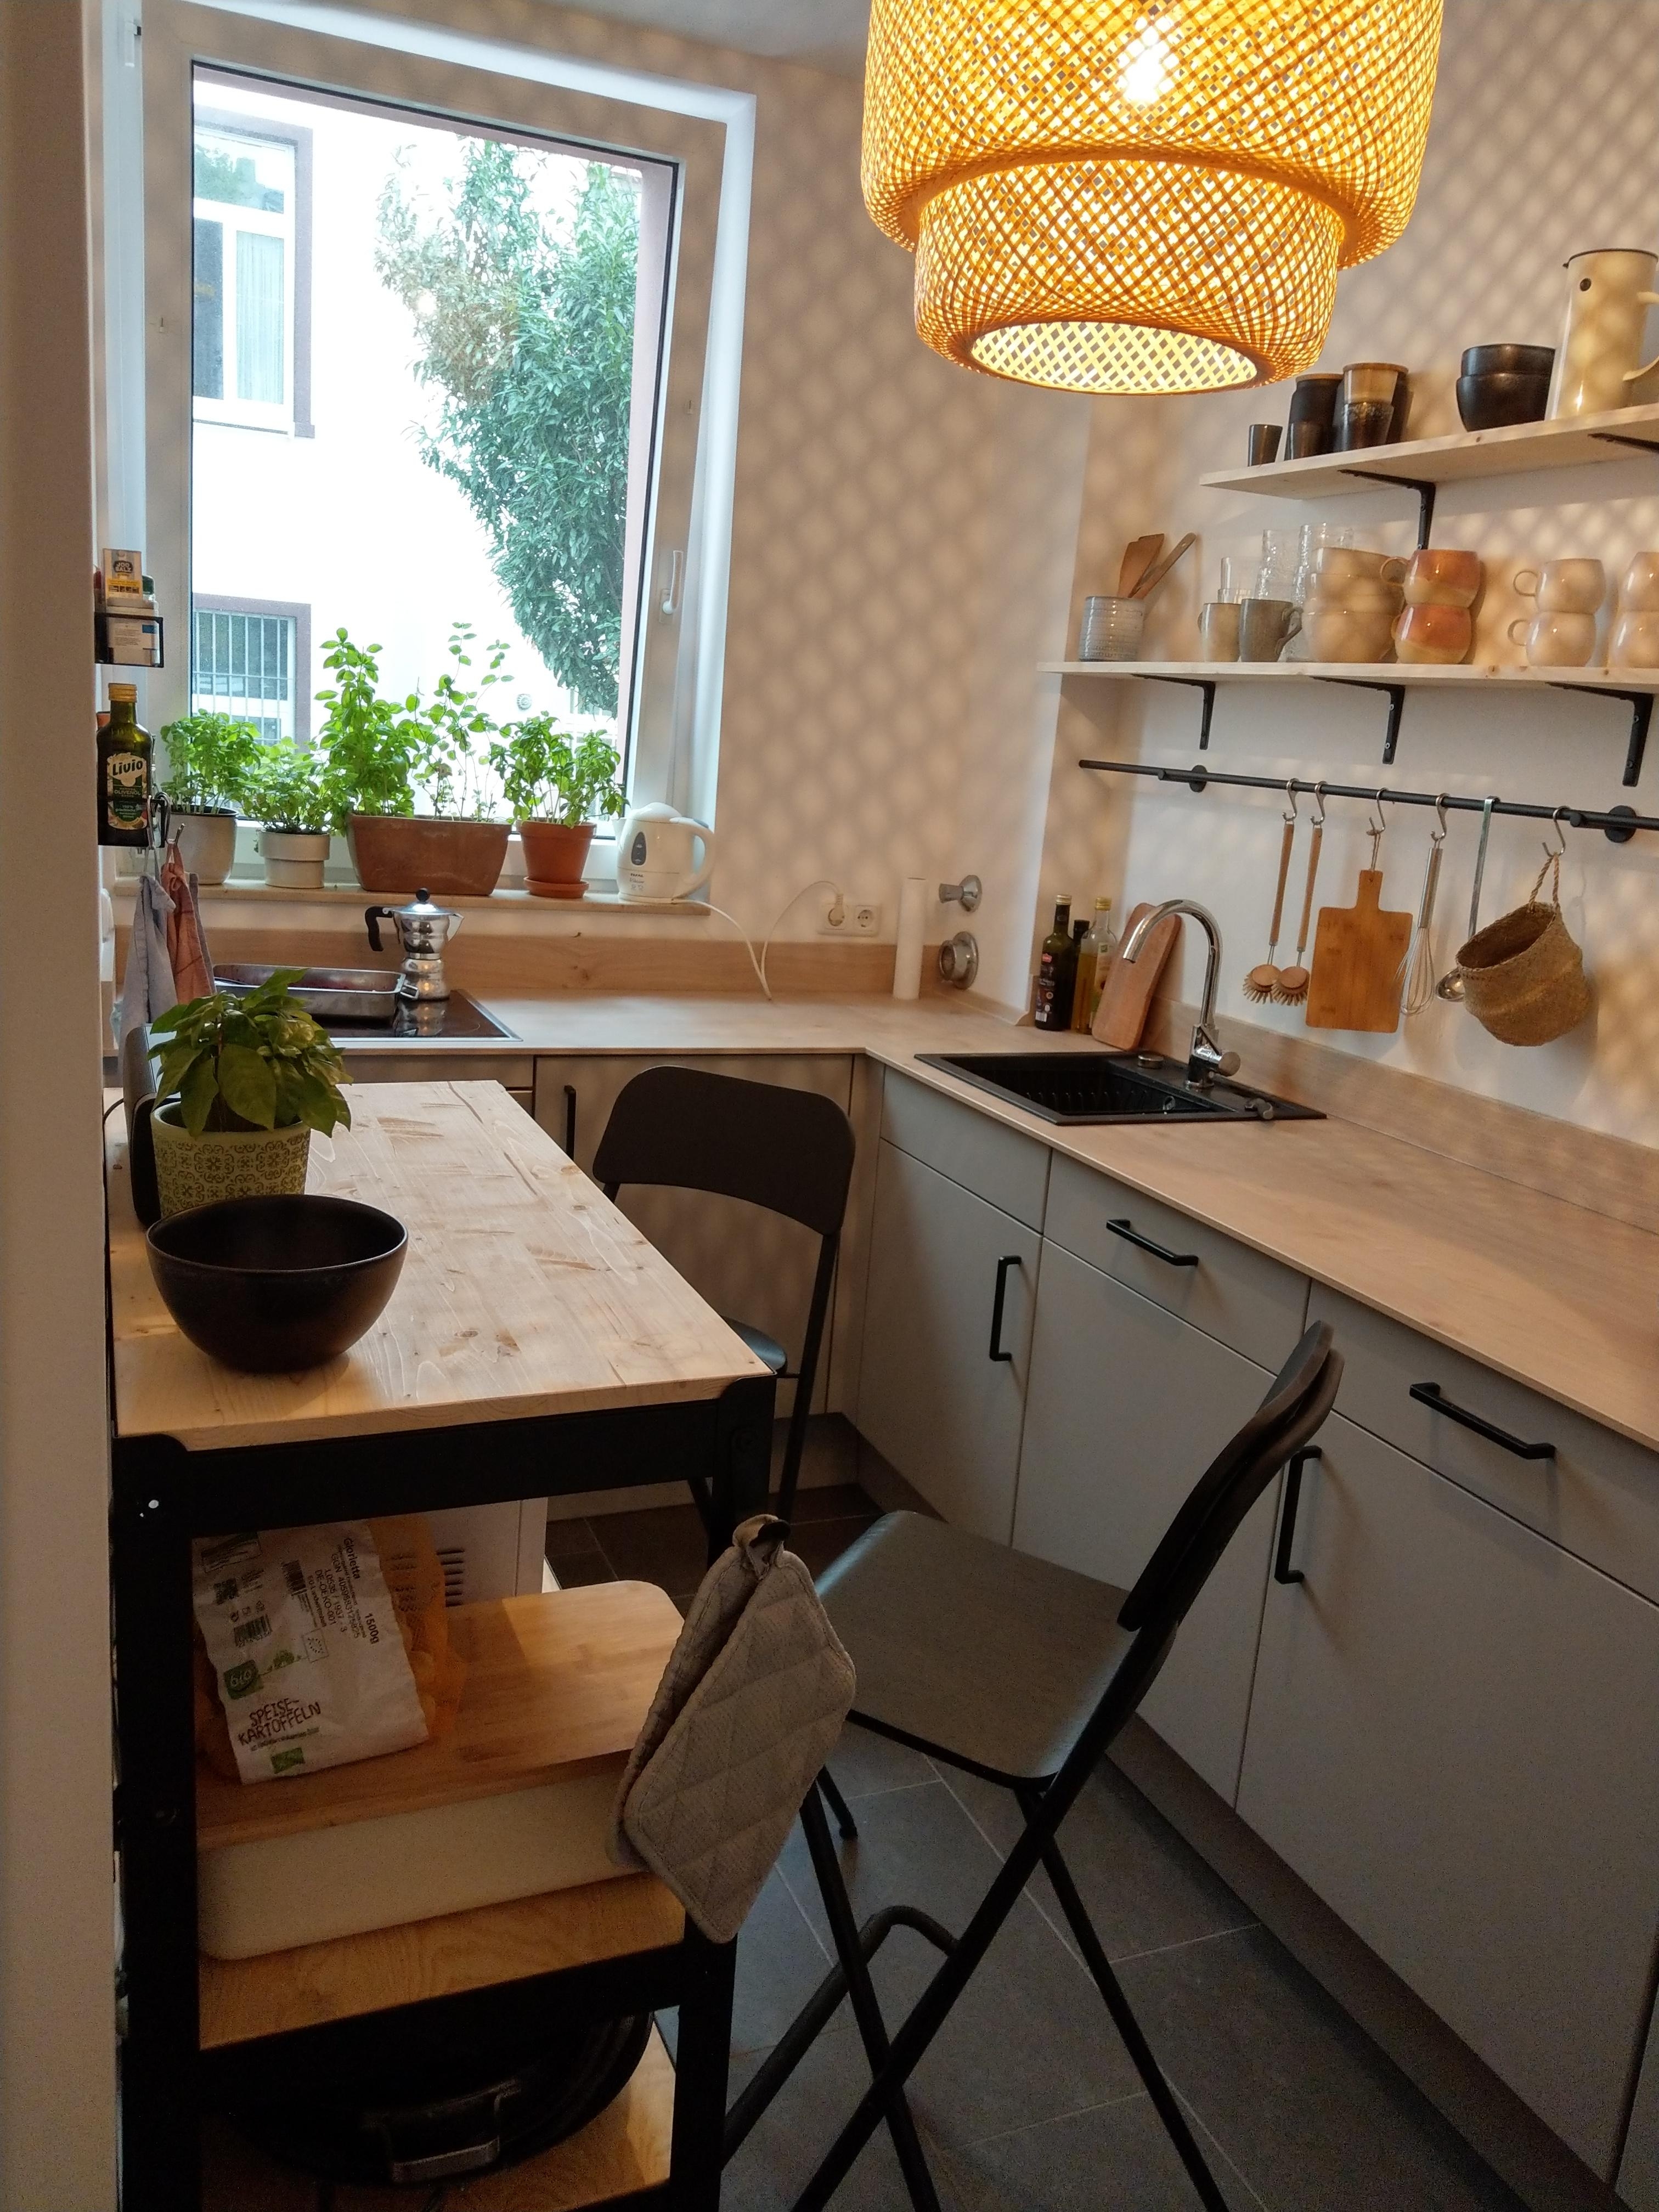 #kleinerraum #livingchallenge
In der mini Altbauküche muss man erfinderisch sein. Warum nicht das Regal als Tisch nutzen